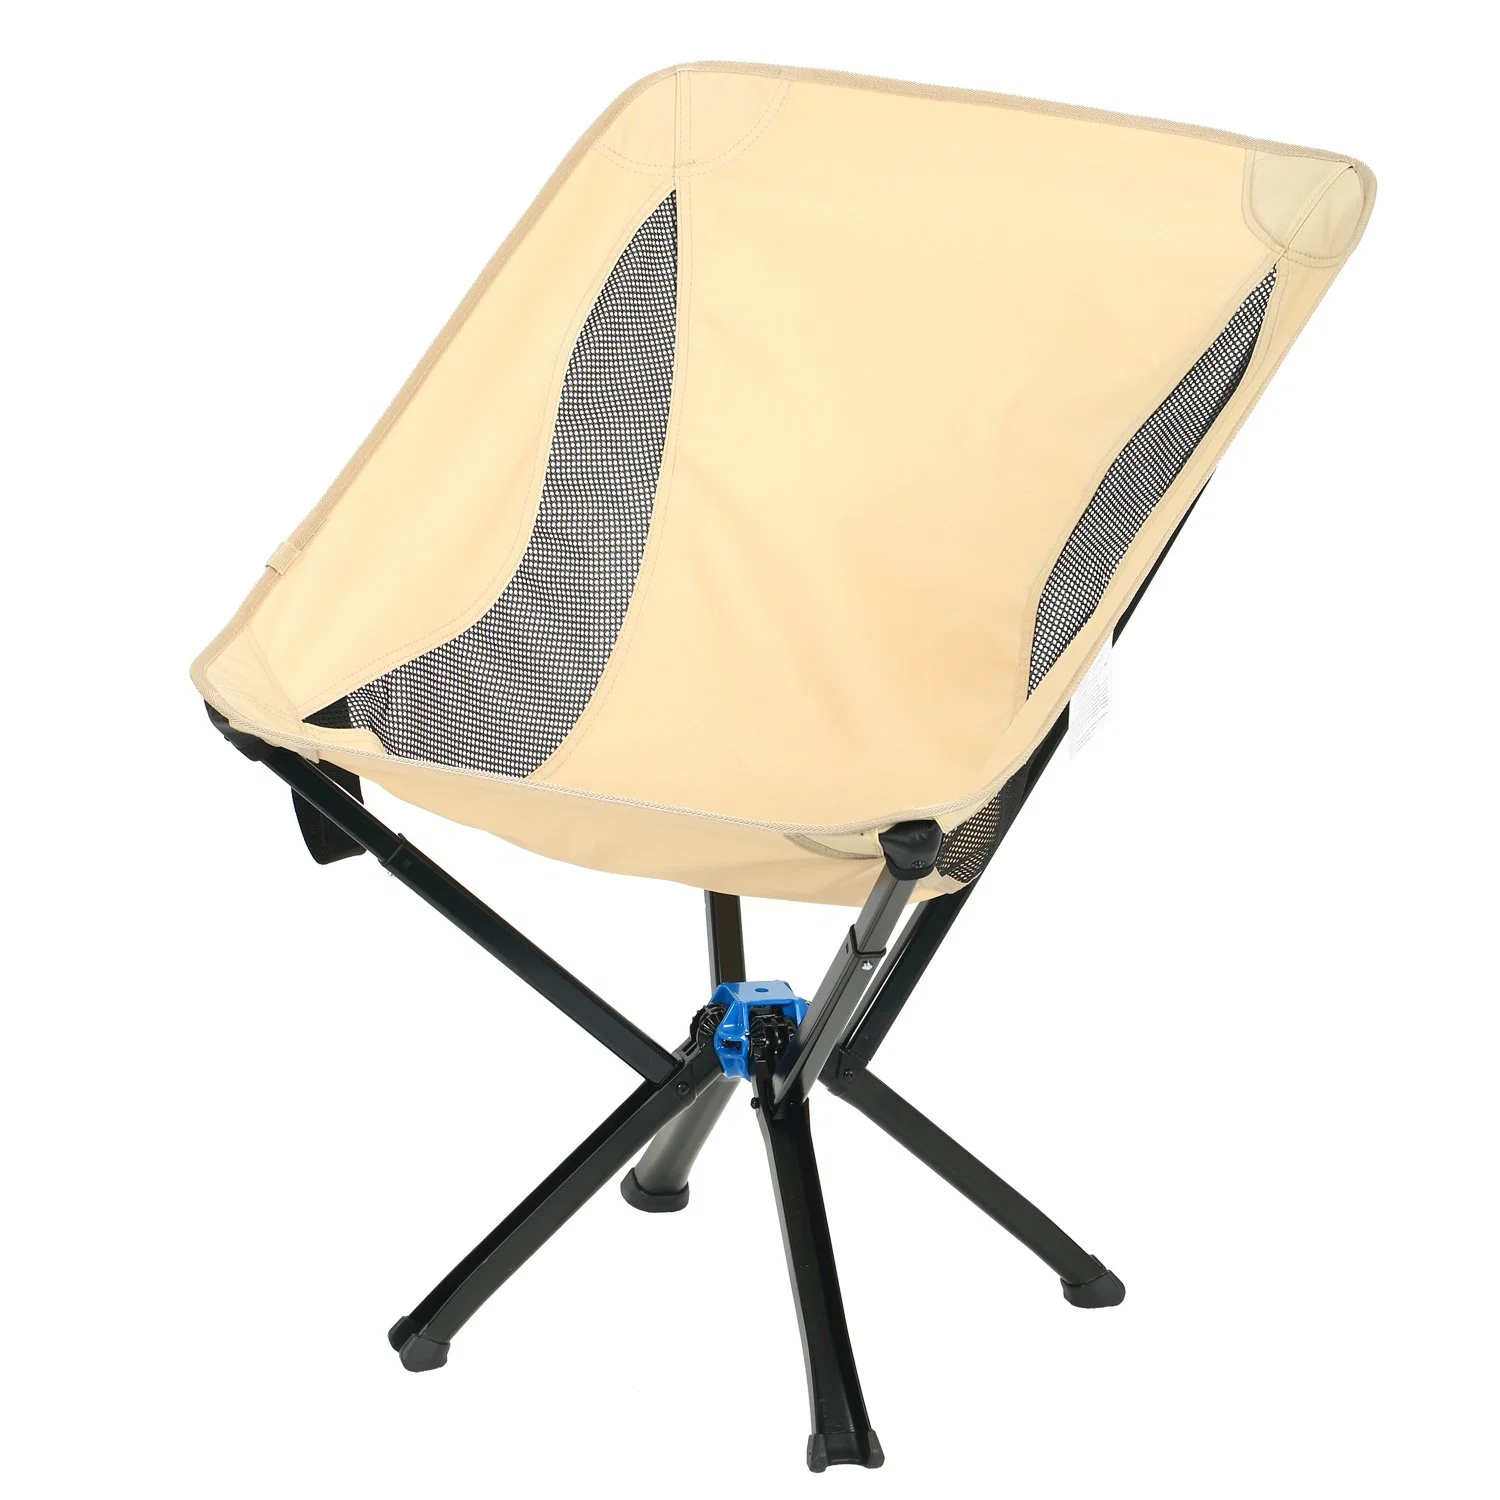 Chaise de camping Anywhere Chair de petite taille - une chaise pliante portable et polyvalente pour adultes.